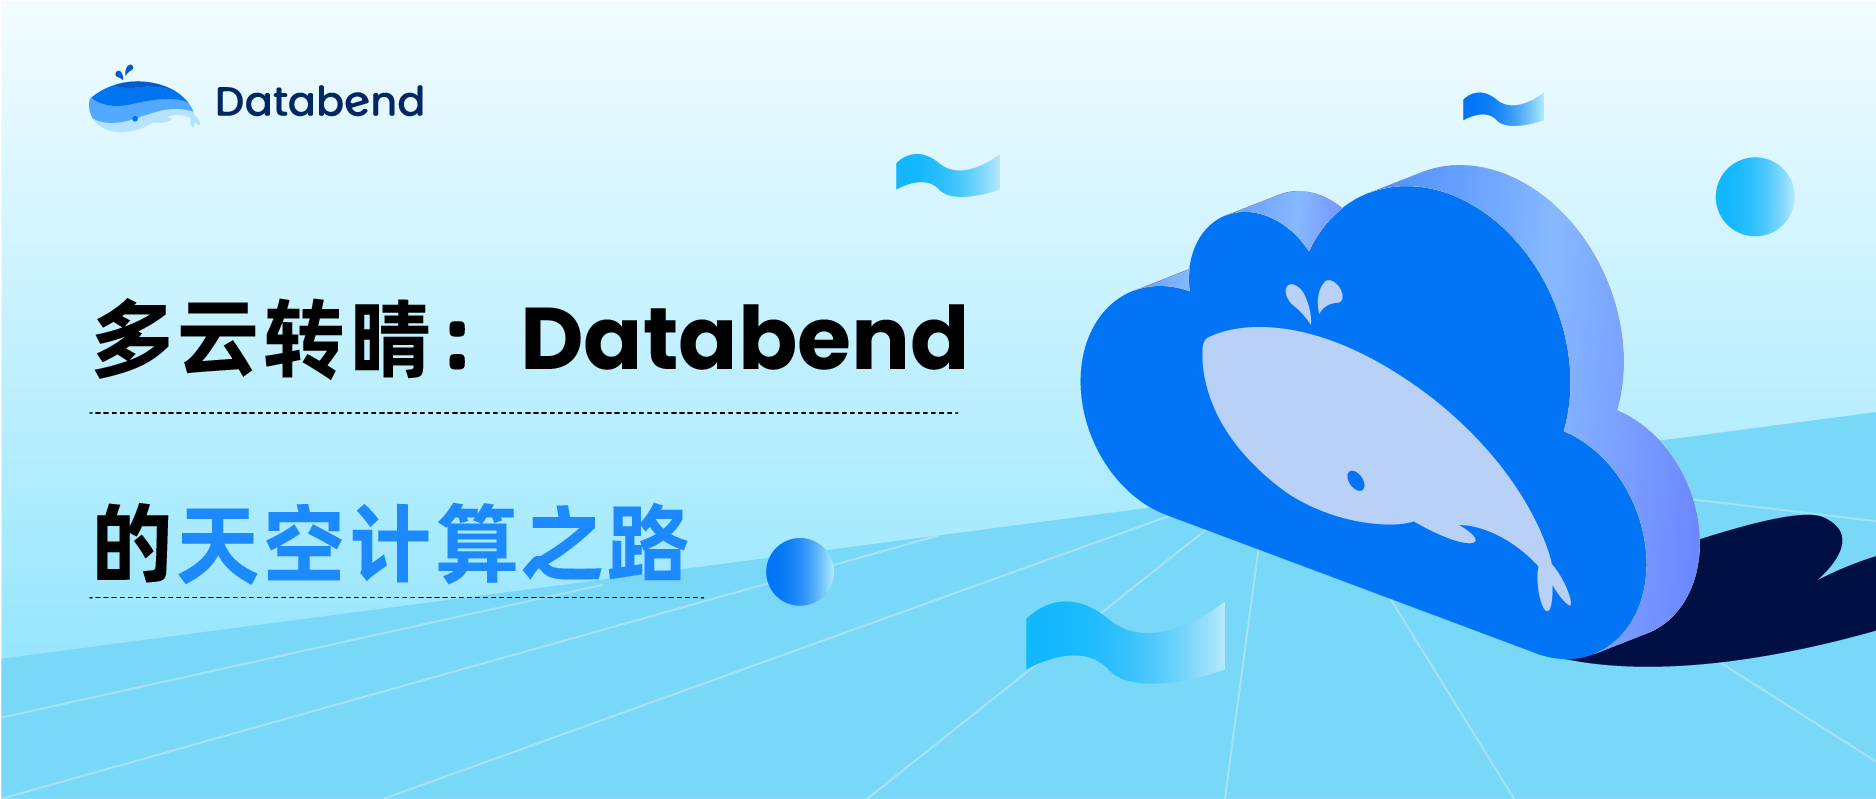 多云转晴：Databend 的天空计算之路